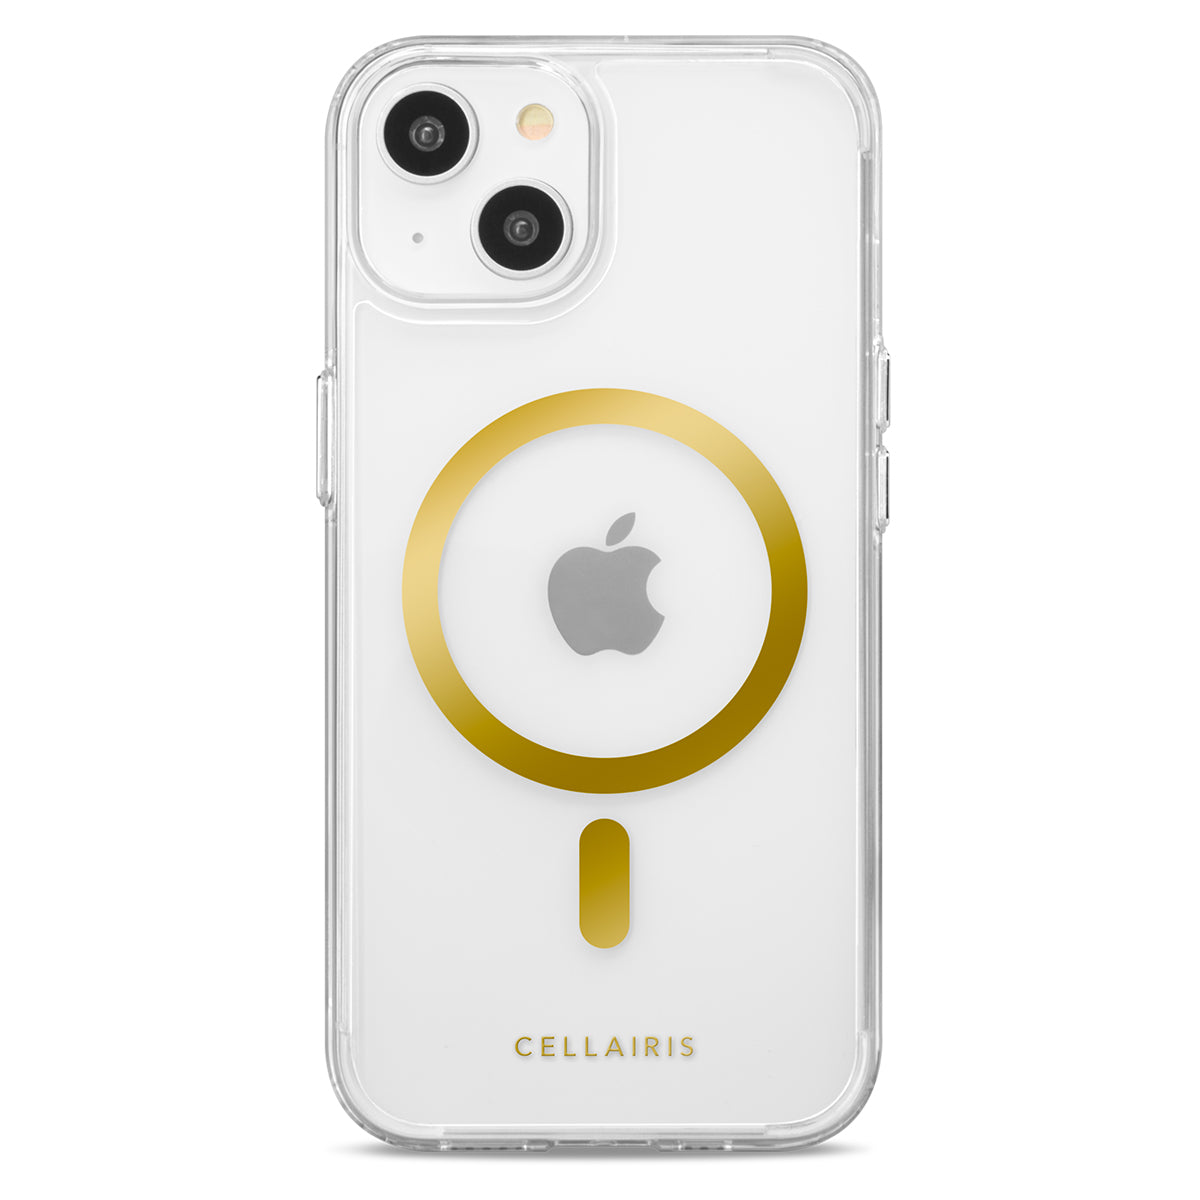 Showcase Slim Halo - iPhone 15 Plus/ 14 Plus Gold w/ MagSafe Cases